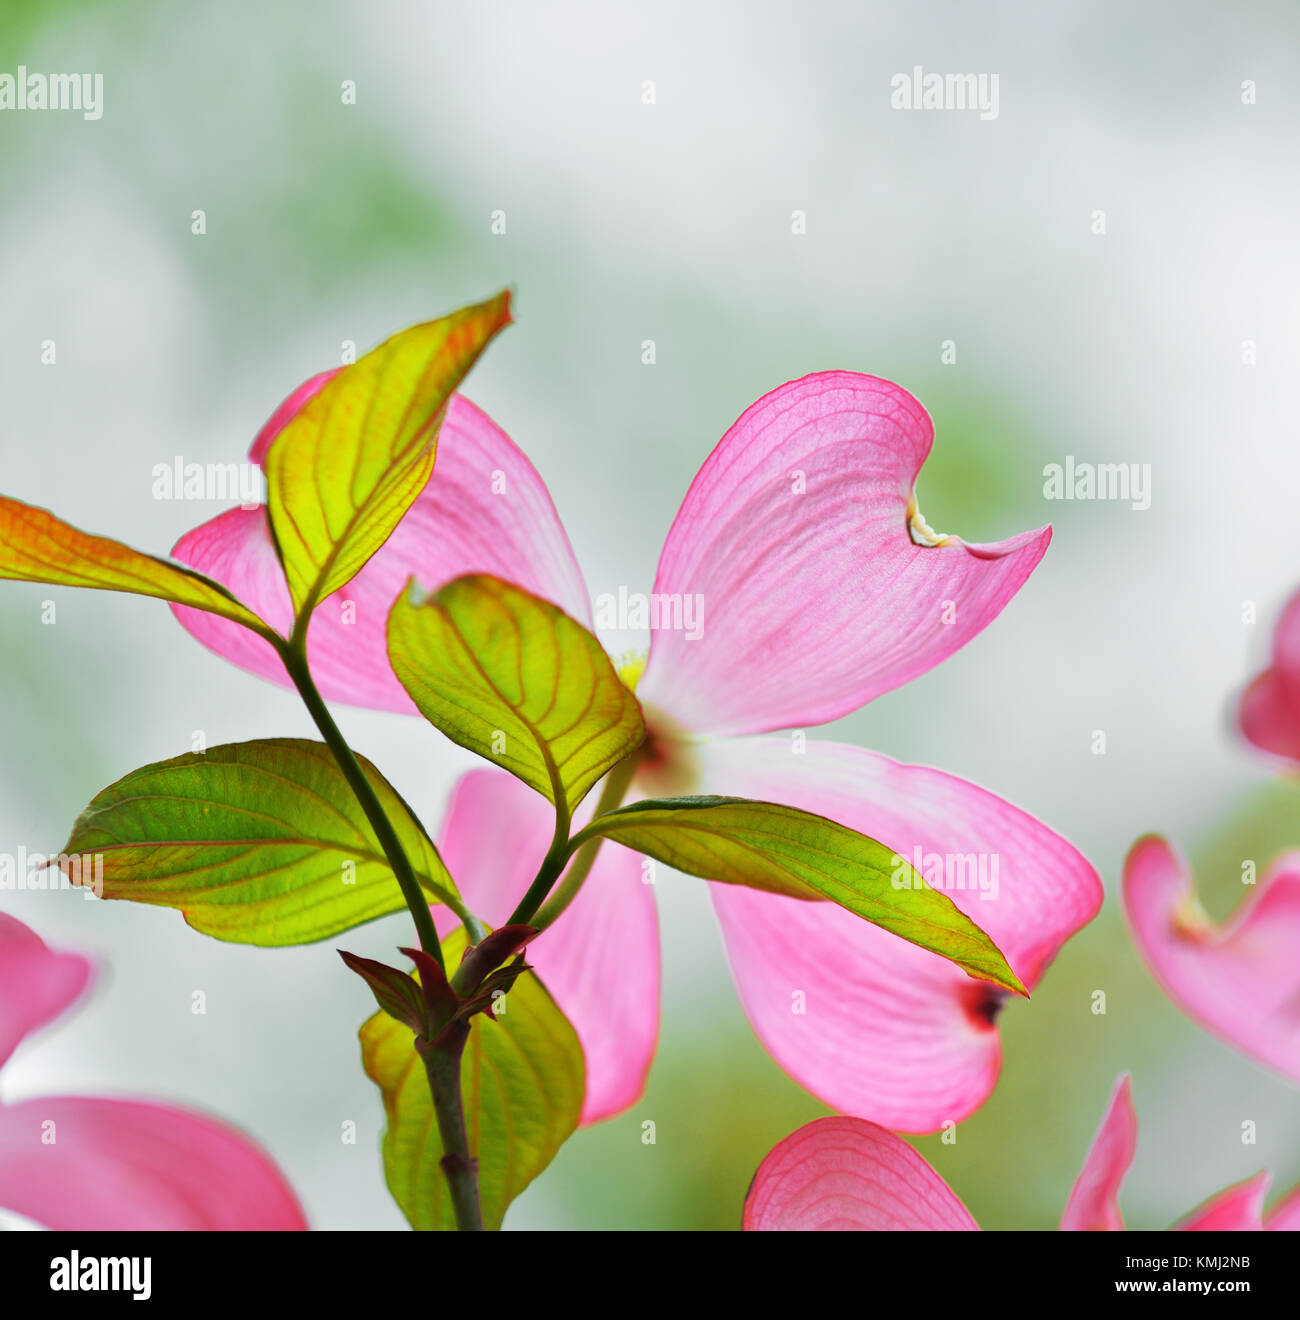 Fioritura sanguinello dettaglio. fiore rosa e nuove foglie isolate su cremoso, messa a fuoco morbida dello sfondo Foto Stock